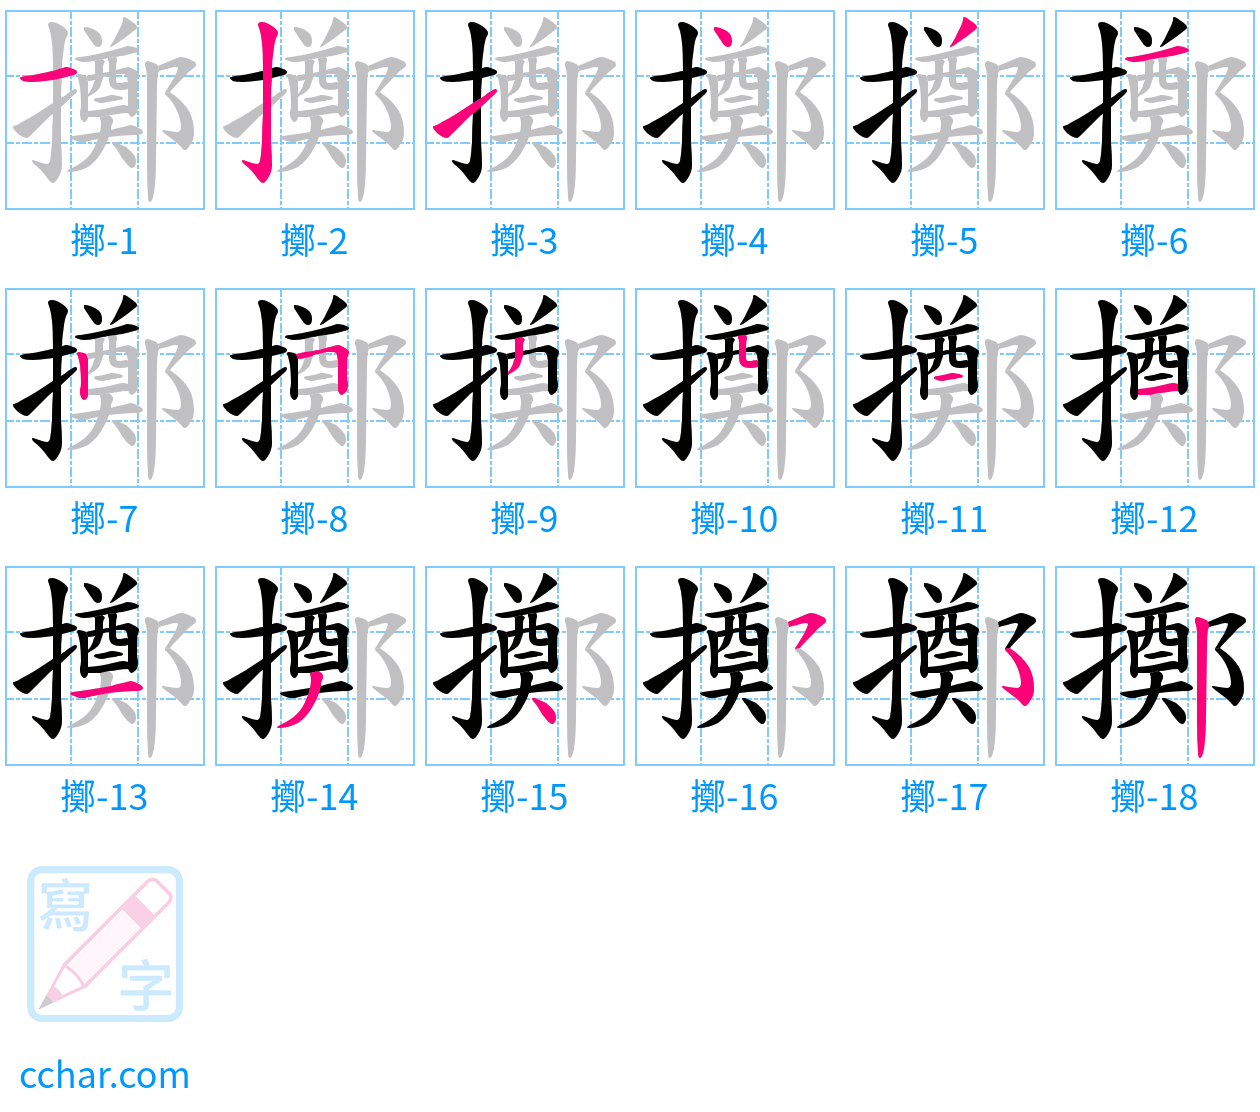 擲 stroke order step-by-step diagram